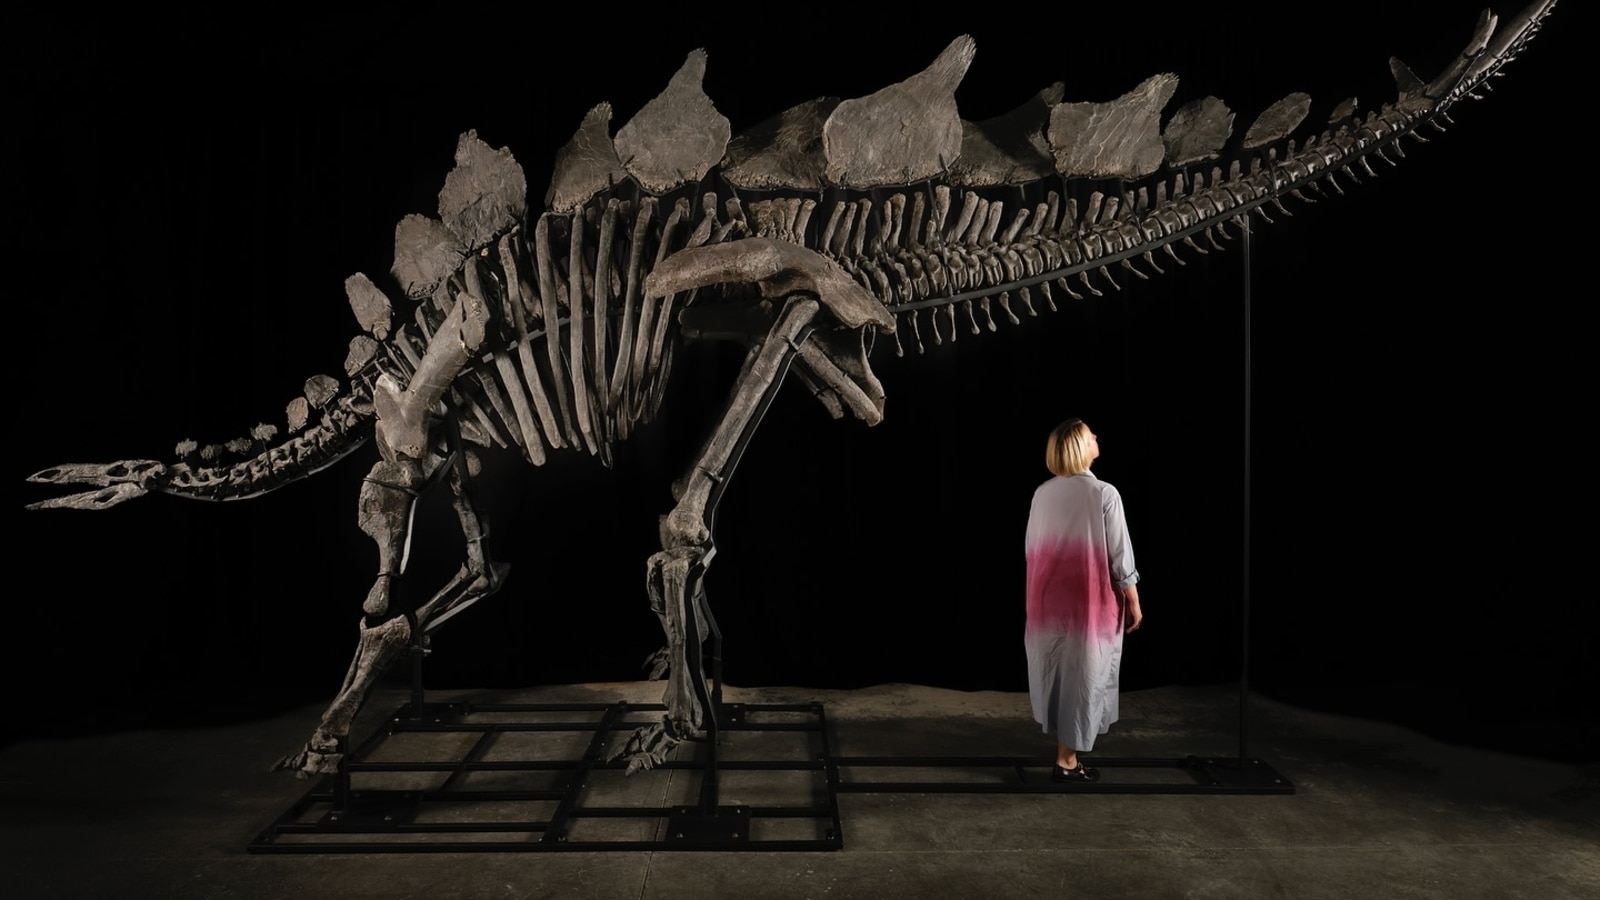 Multimillonario bate récords en subasta al pagar 45 millones de dólares por esqueleto de dinosaurio |  Tendencias